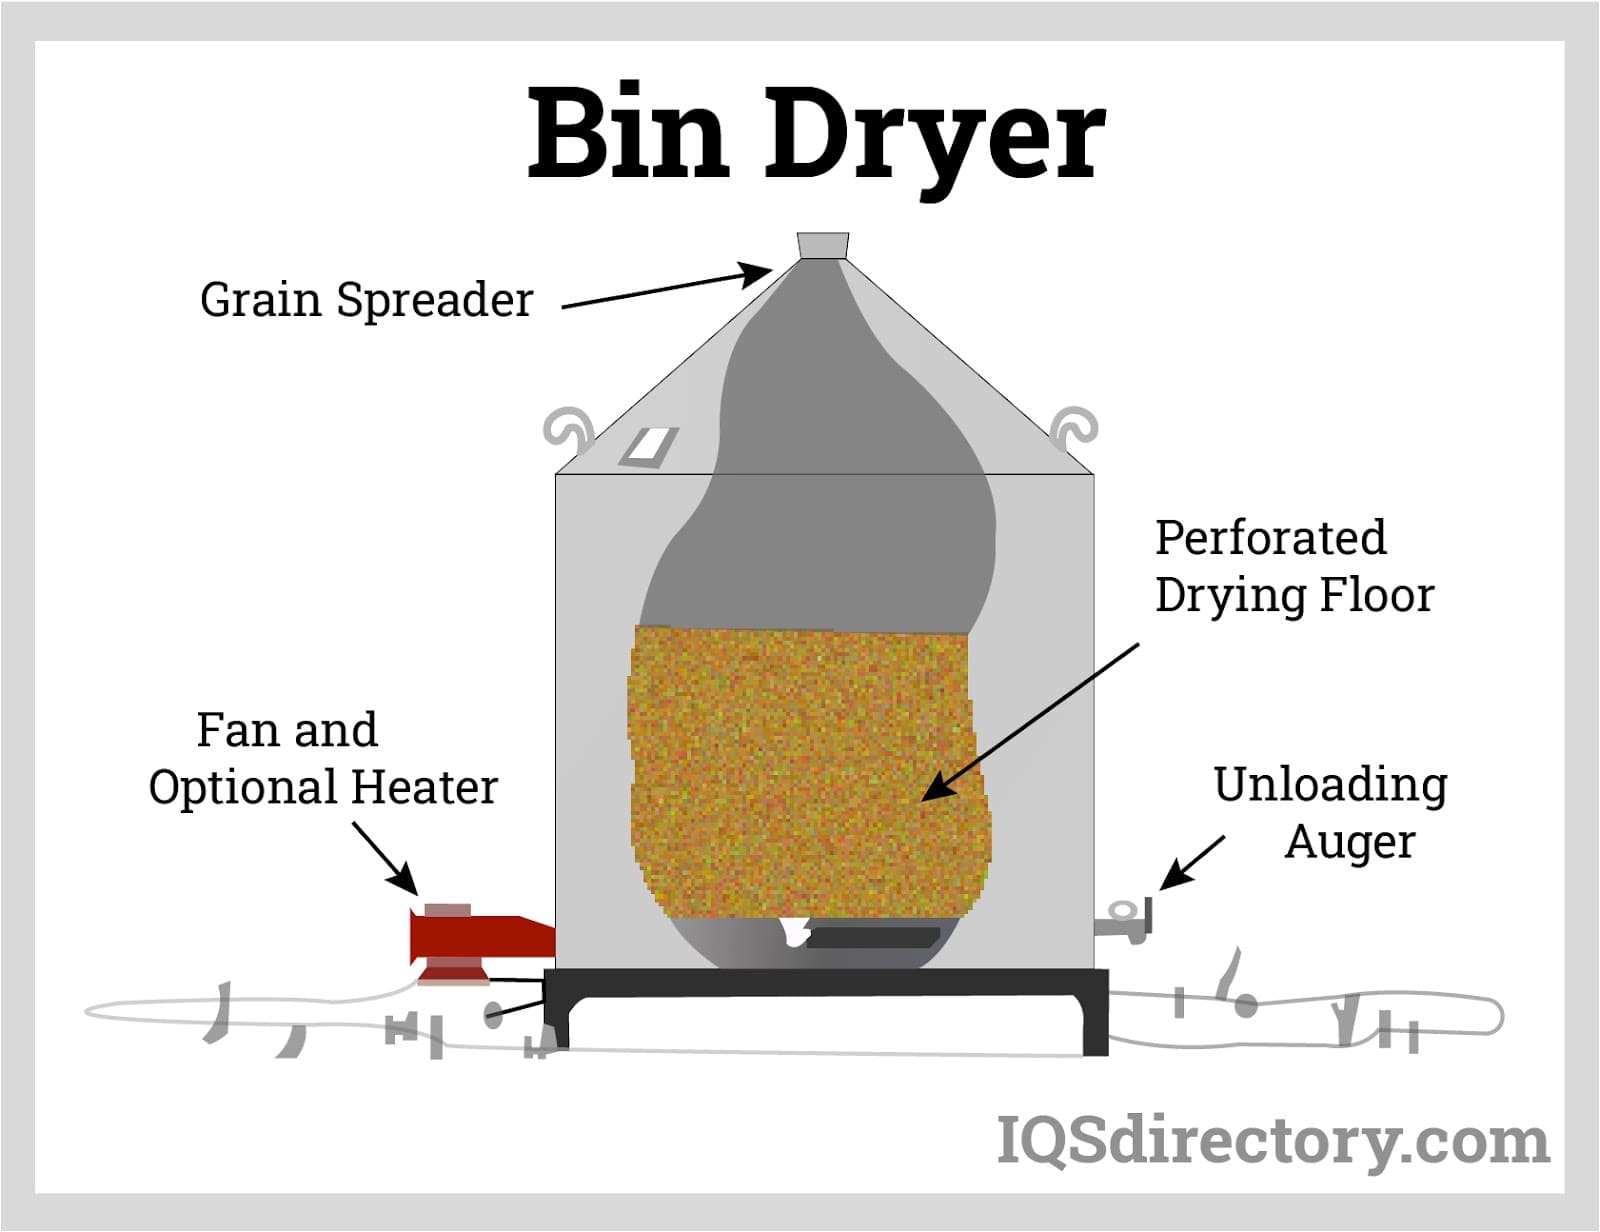 Bin Dryer